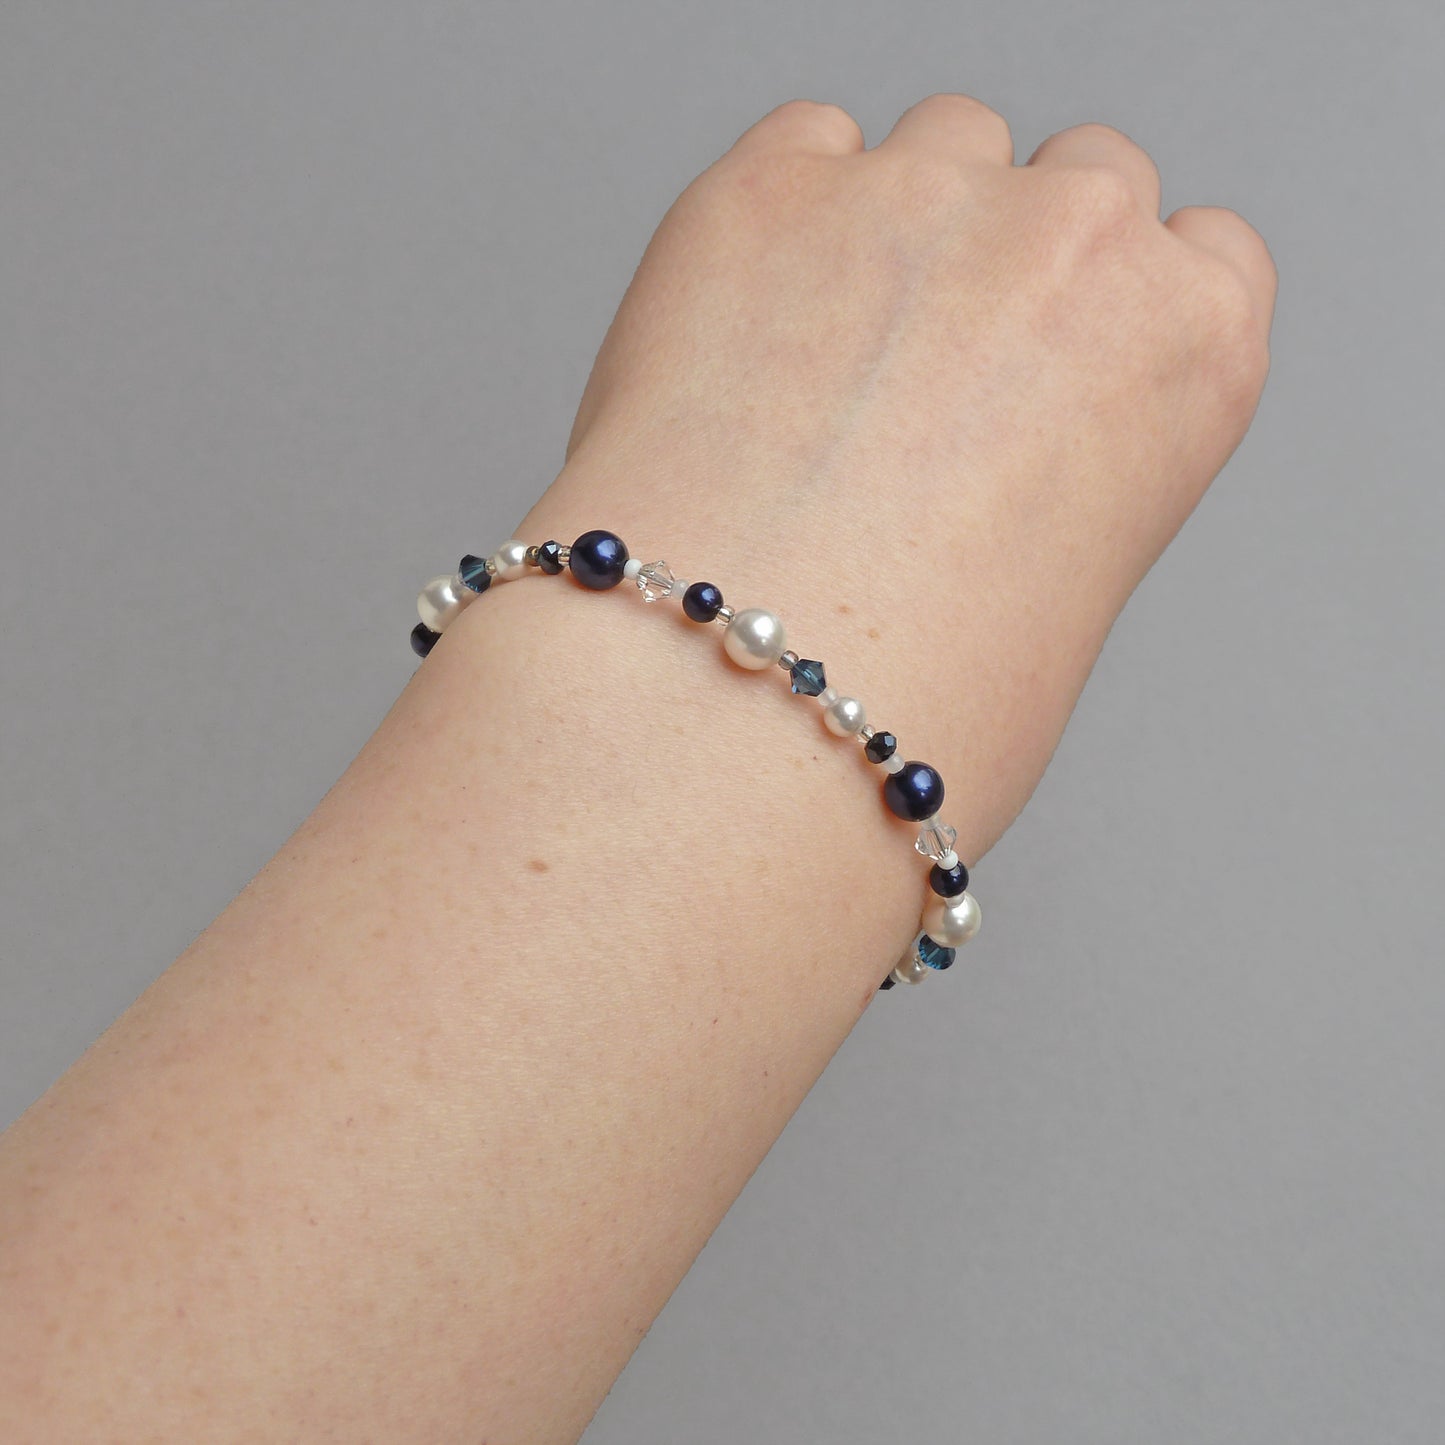 Extendable navy blue bracelets for weddings